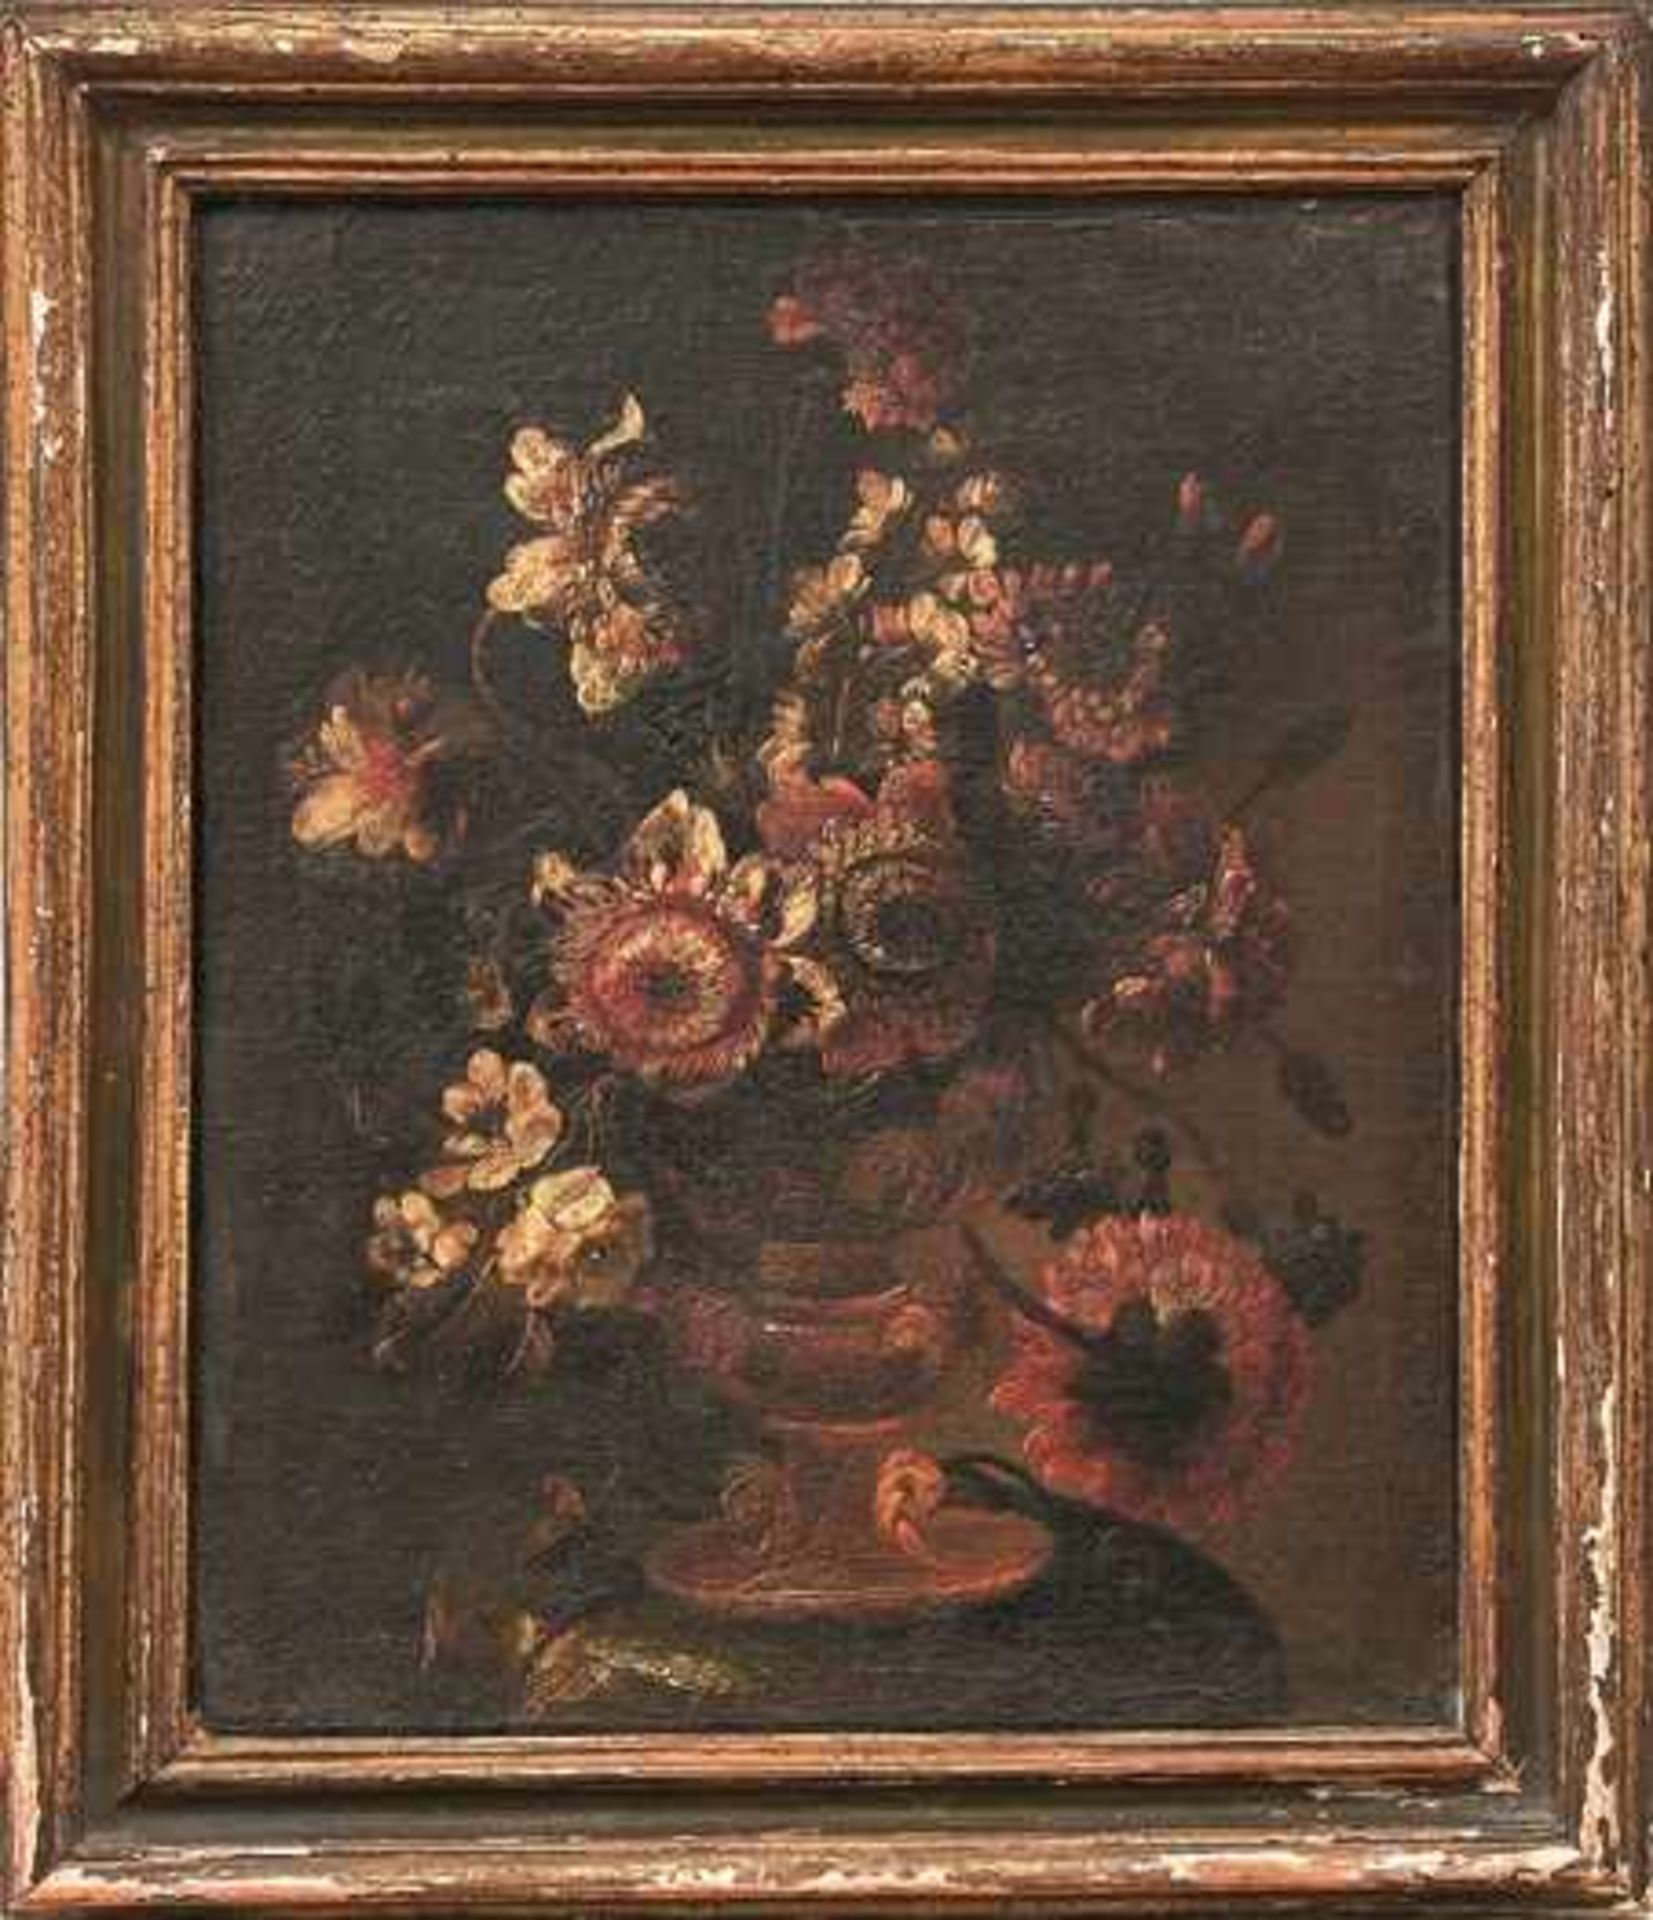 Satz von drei Blumenstillleben Neapolitanische Schule um 1700 Öl/Lwd. 43 x 36 cm. - Dieses Los wurde - Bild 3 aus 3